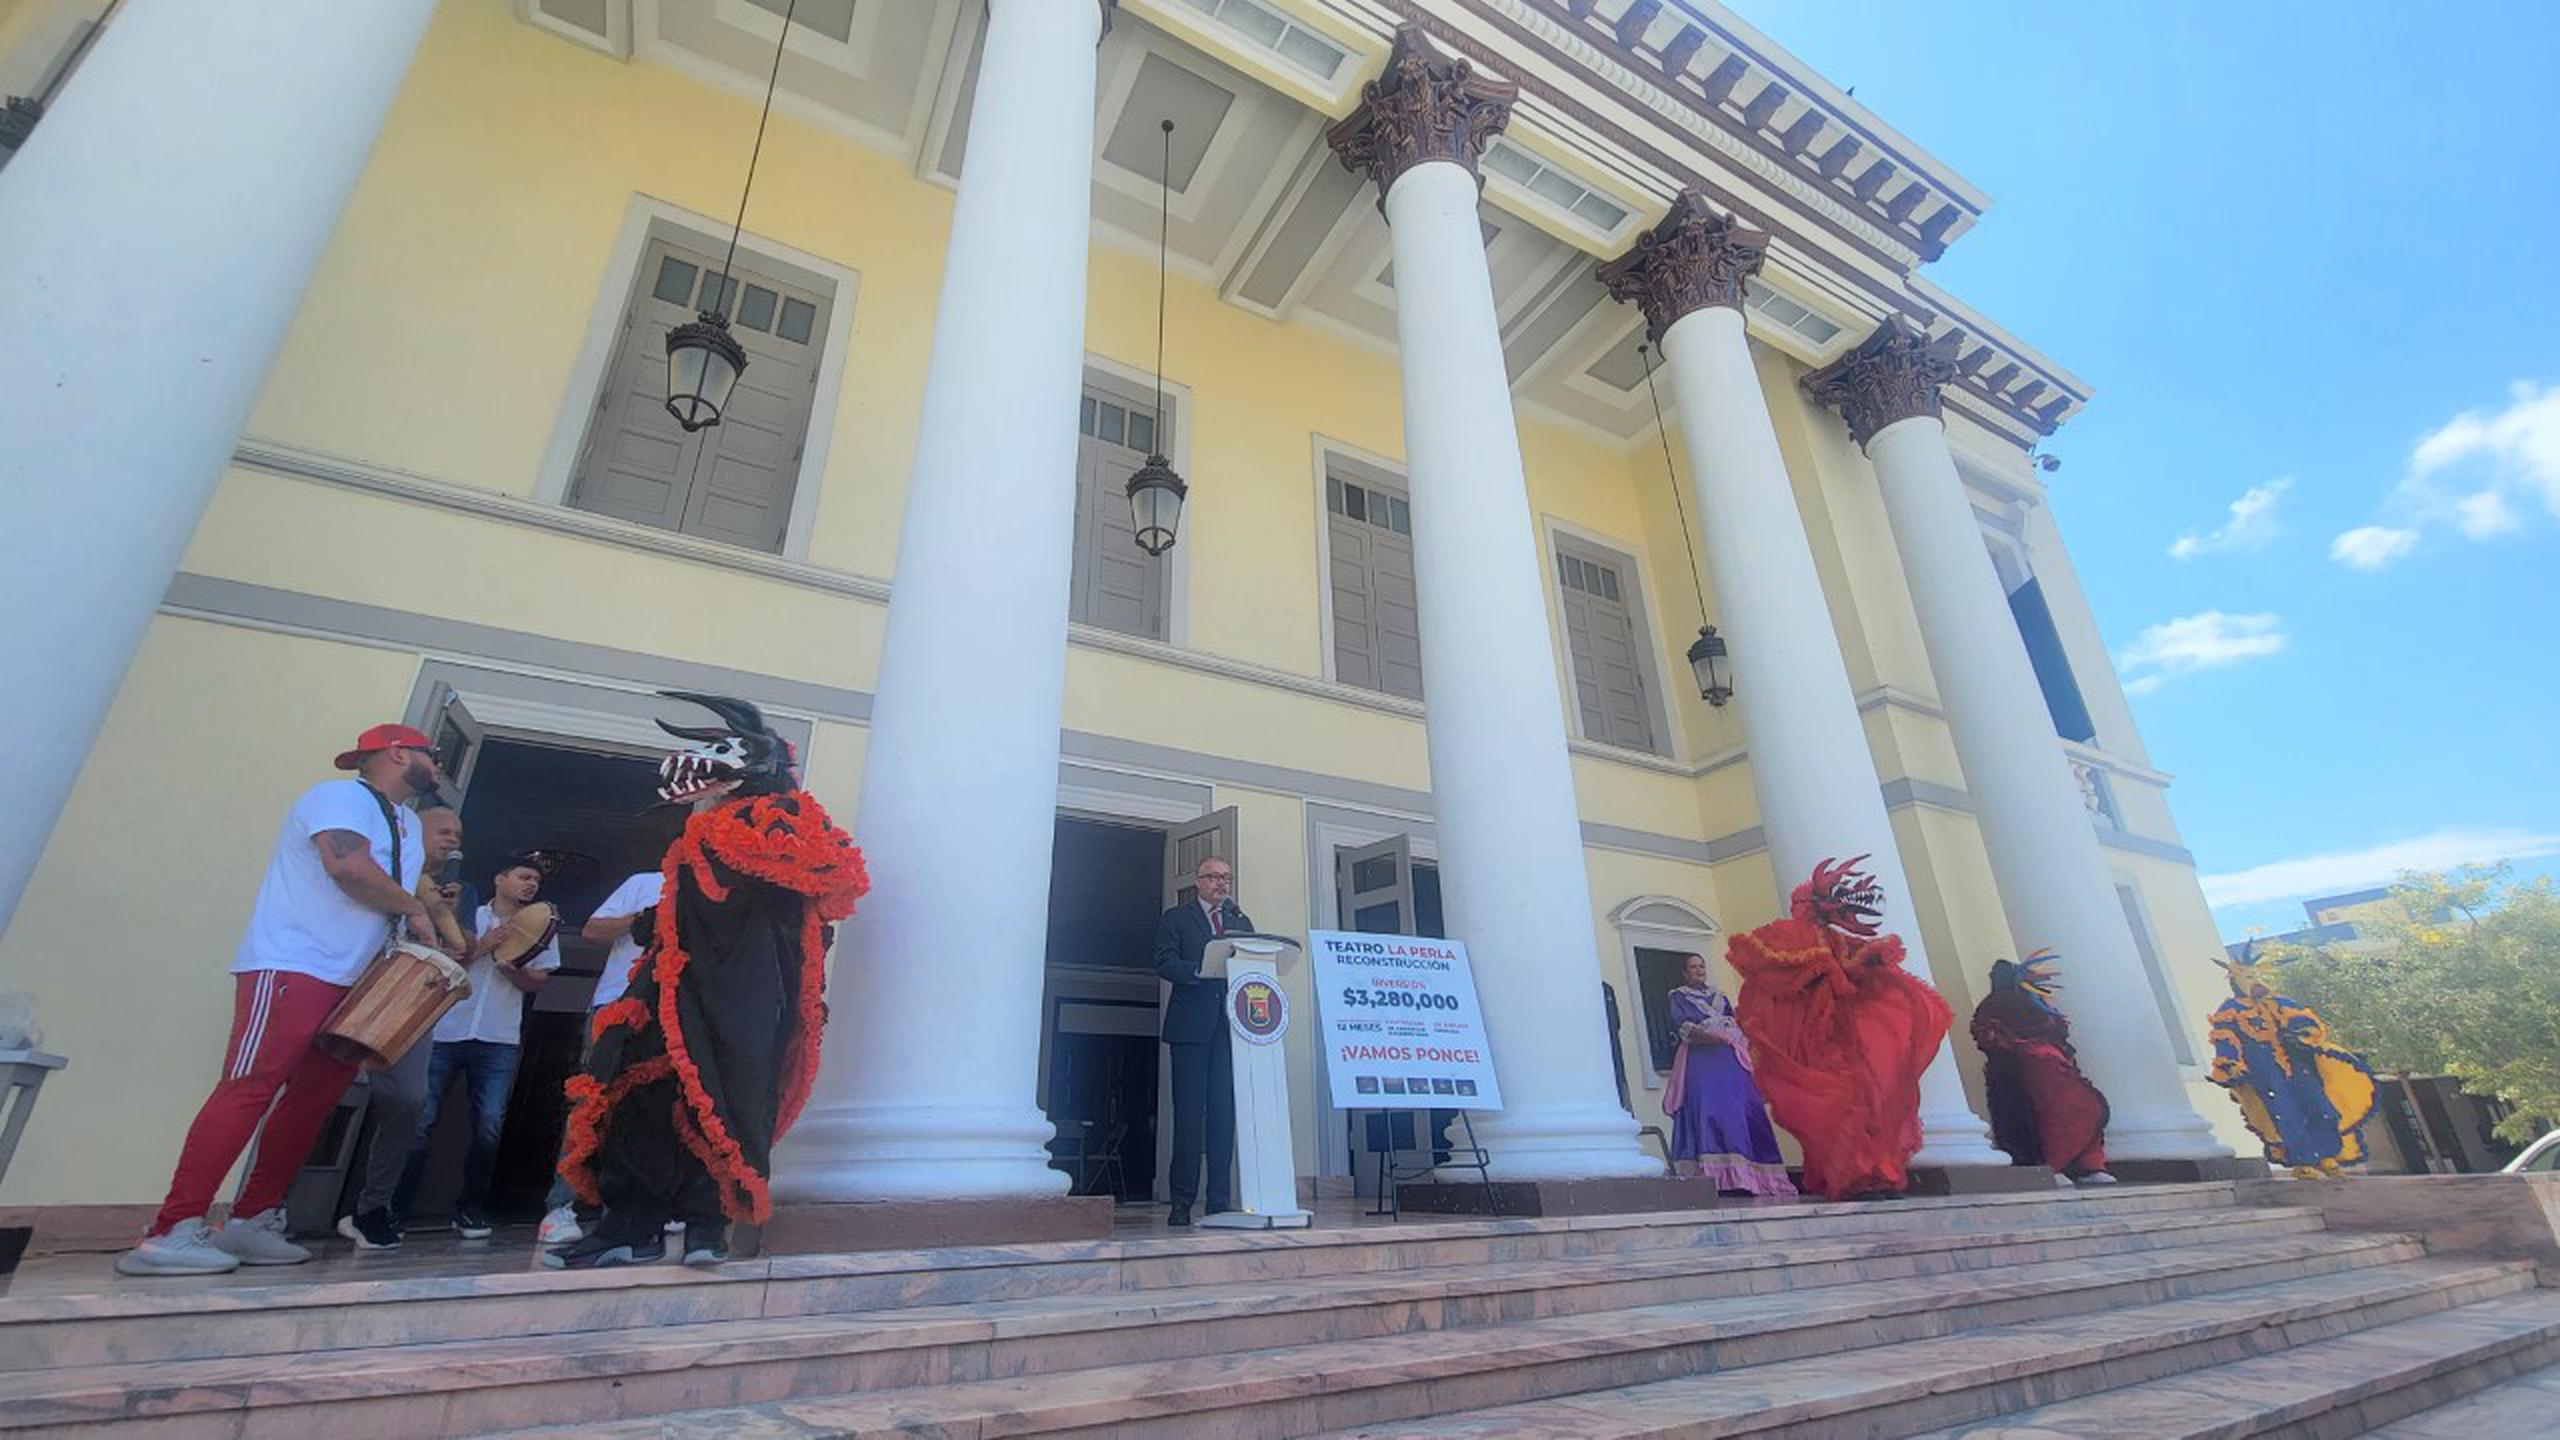 El alcalde de Ponce, Luis Irizarry Pabón, anuncia reconstruccion del Teatro La Perla